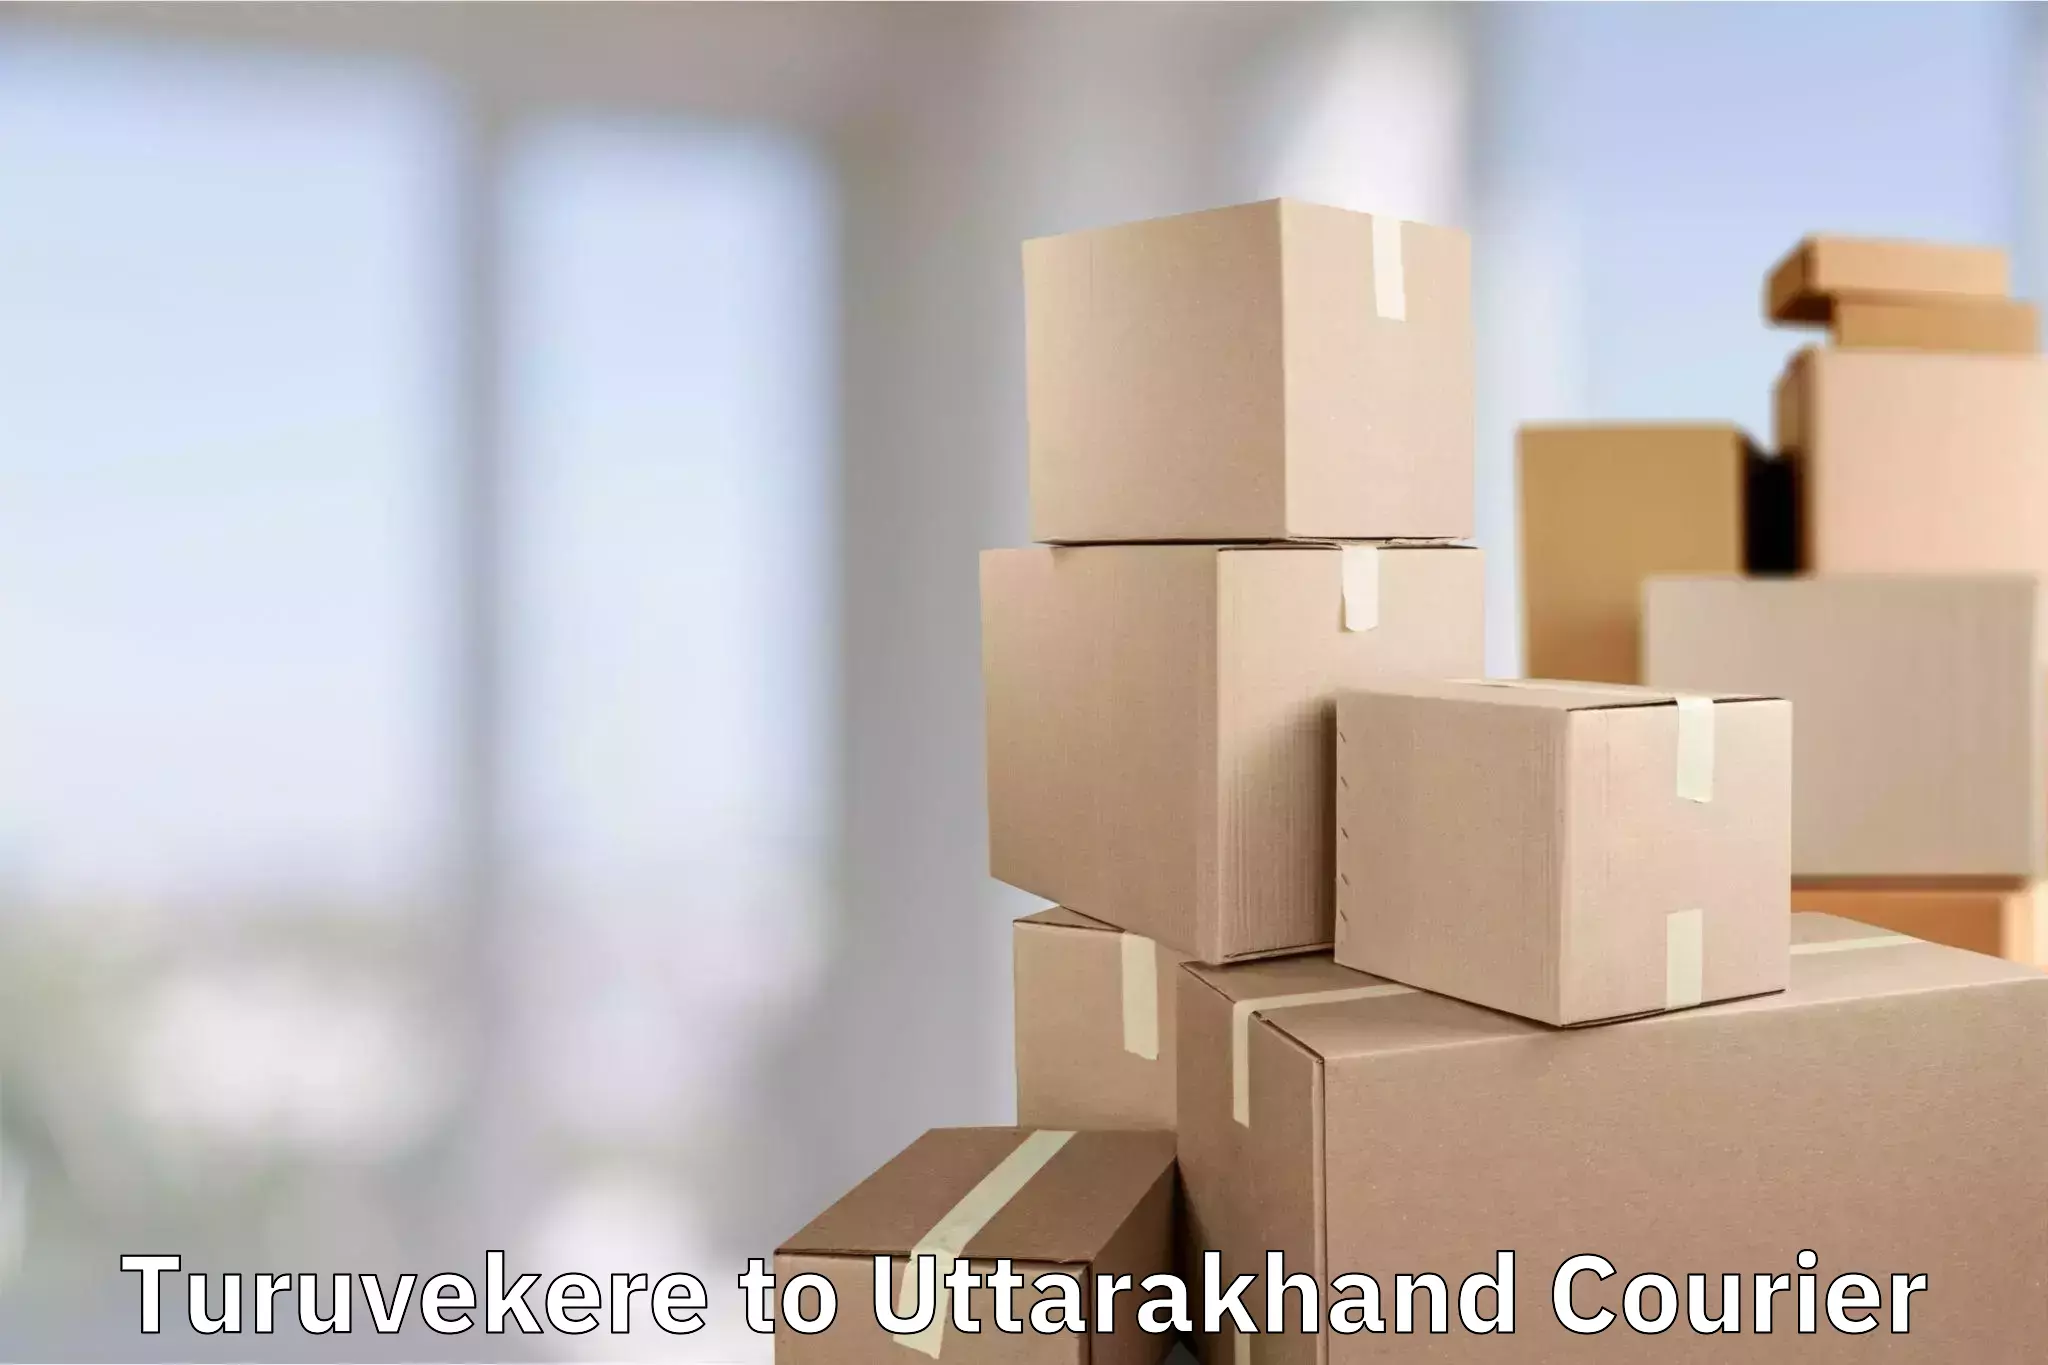 Luggage shipment strategy Turuvekere to Uttarakhand